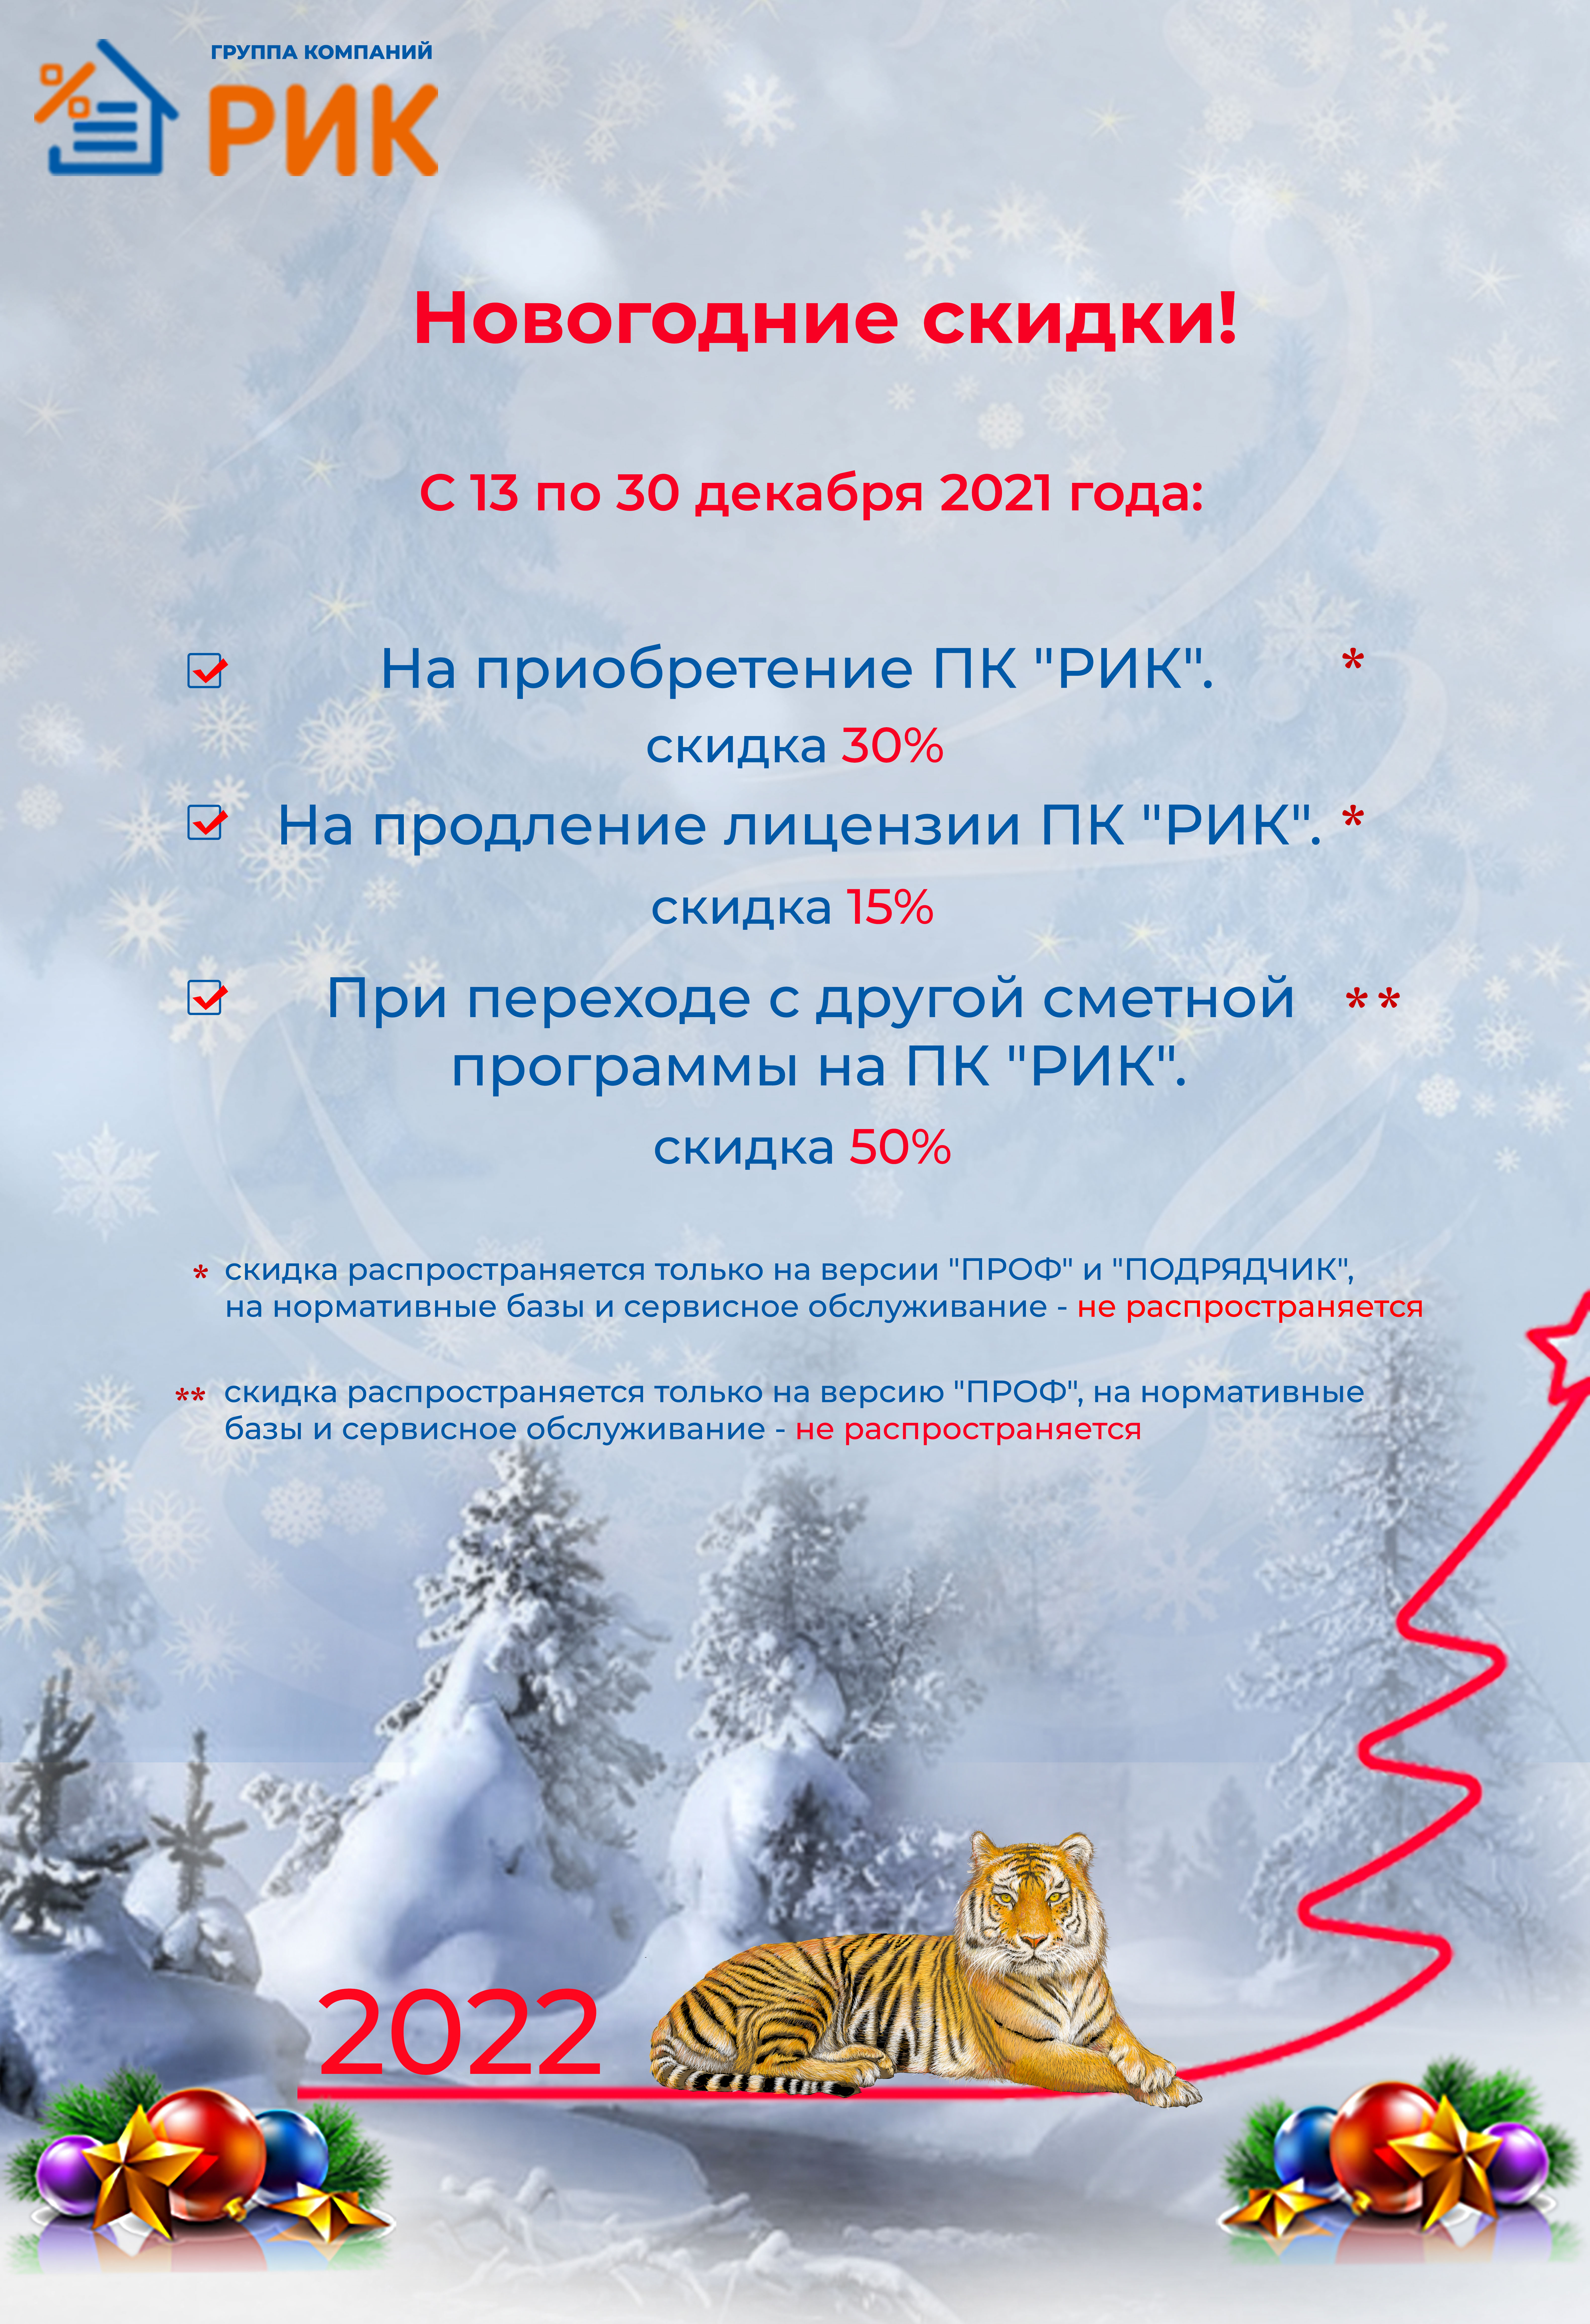 Новогодние скидки с 13 по 30 декабря 2021 года.